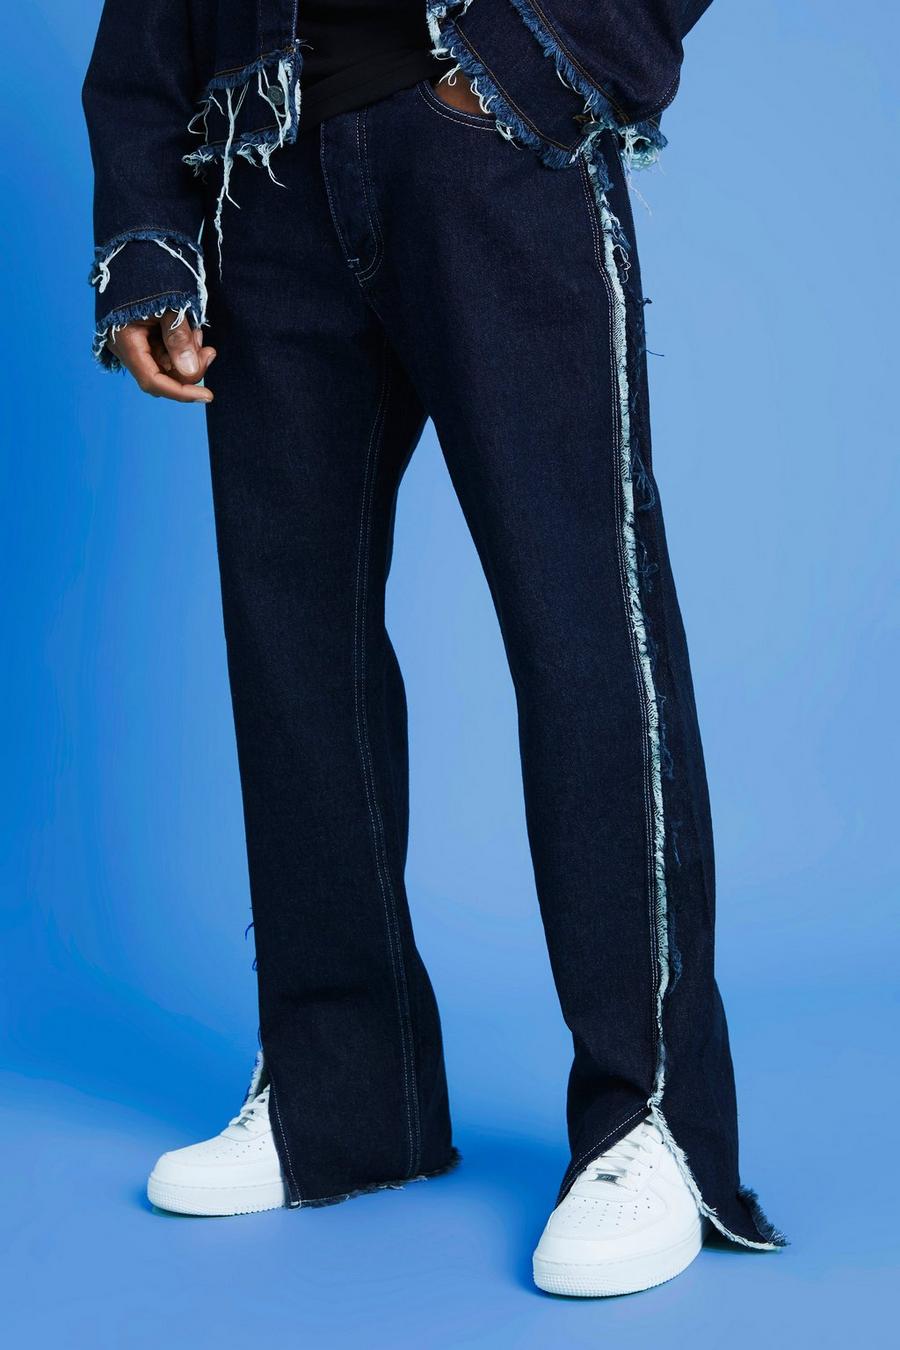 Lockere Jeans mit ausgefranstem Saum und geteiltem Saum, Indigo bleu